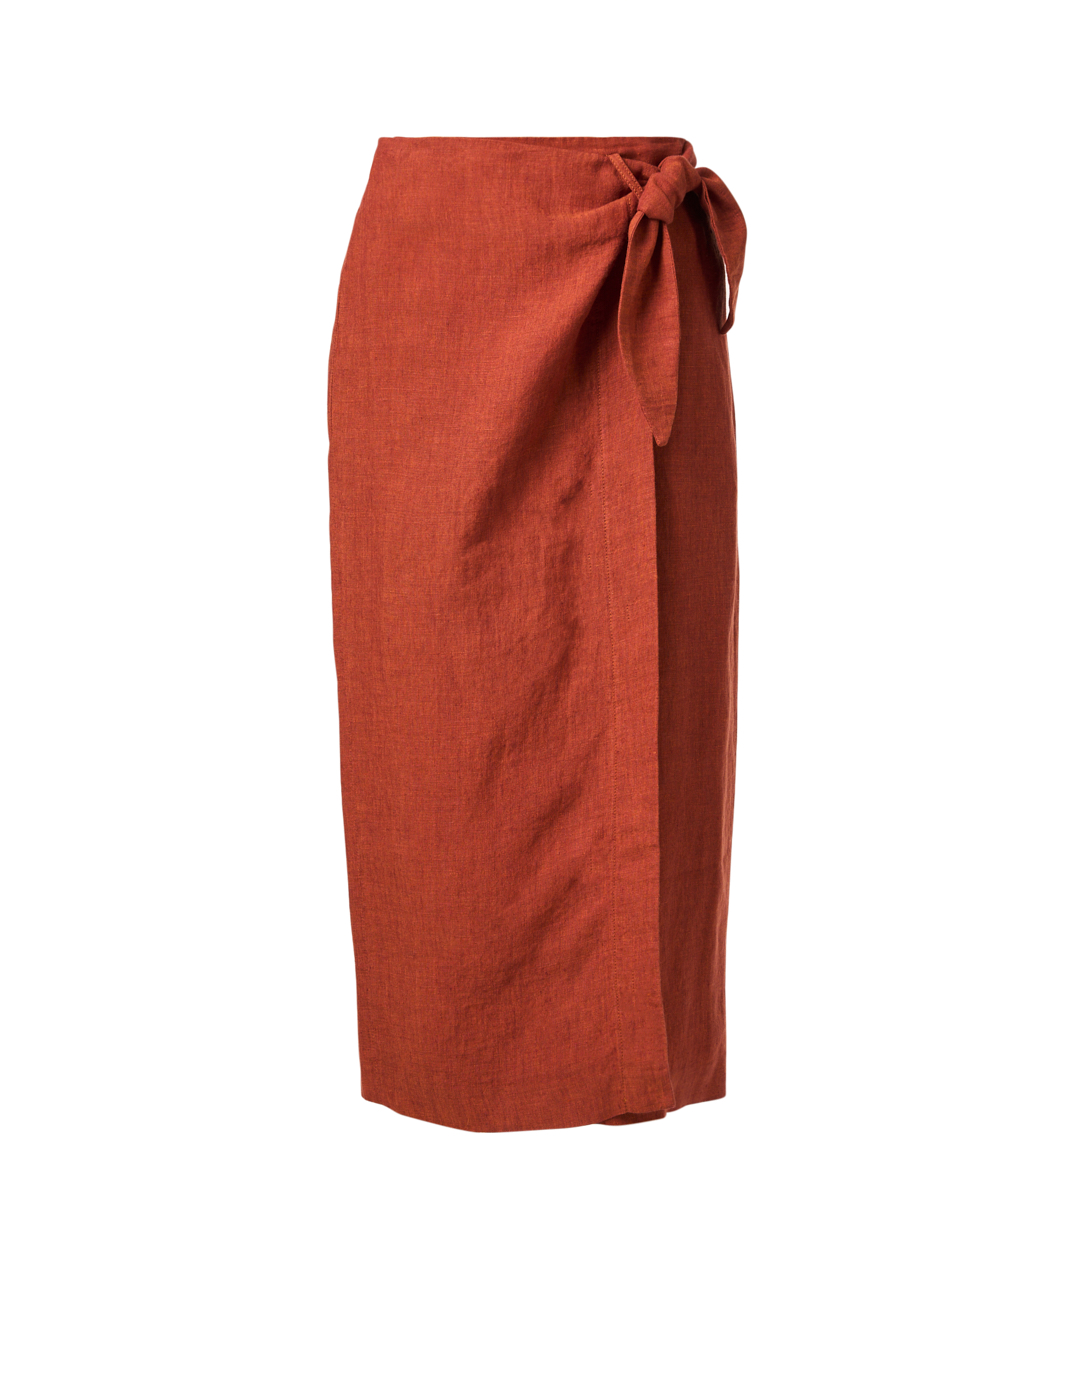 Rust Red Linen Wrap Skirt